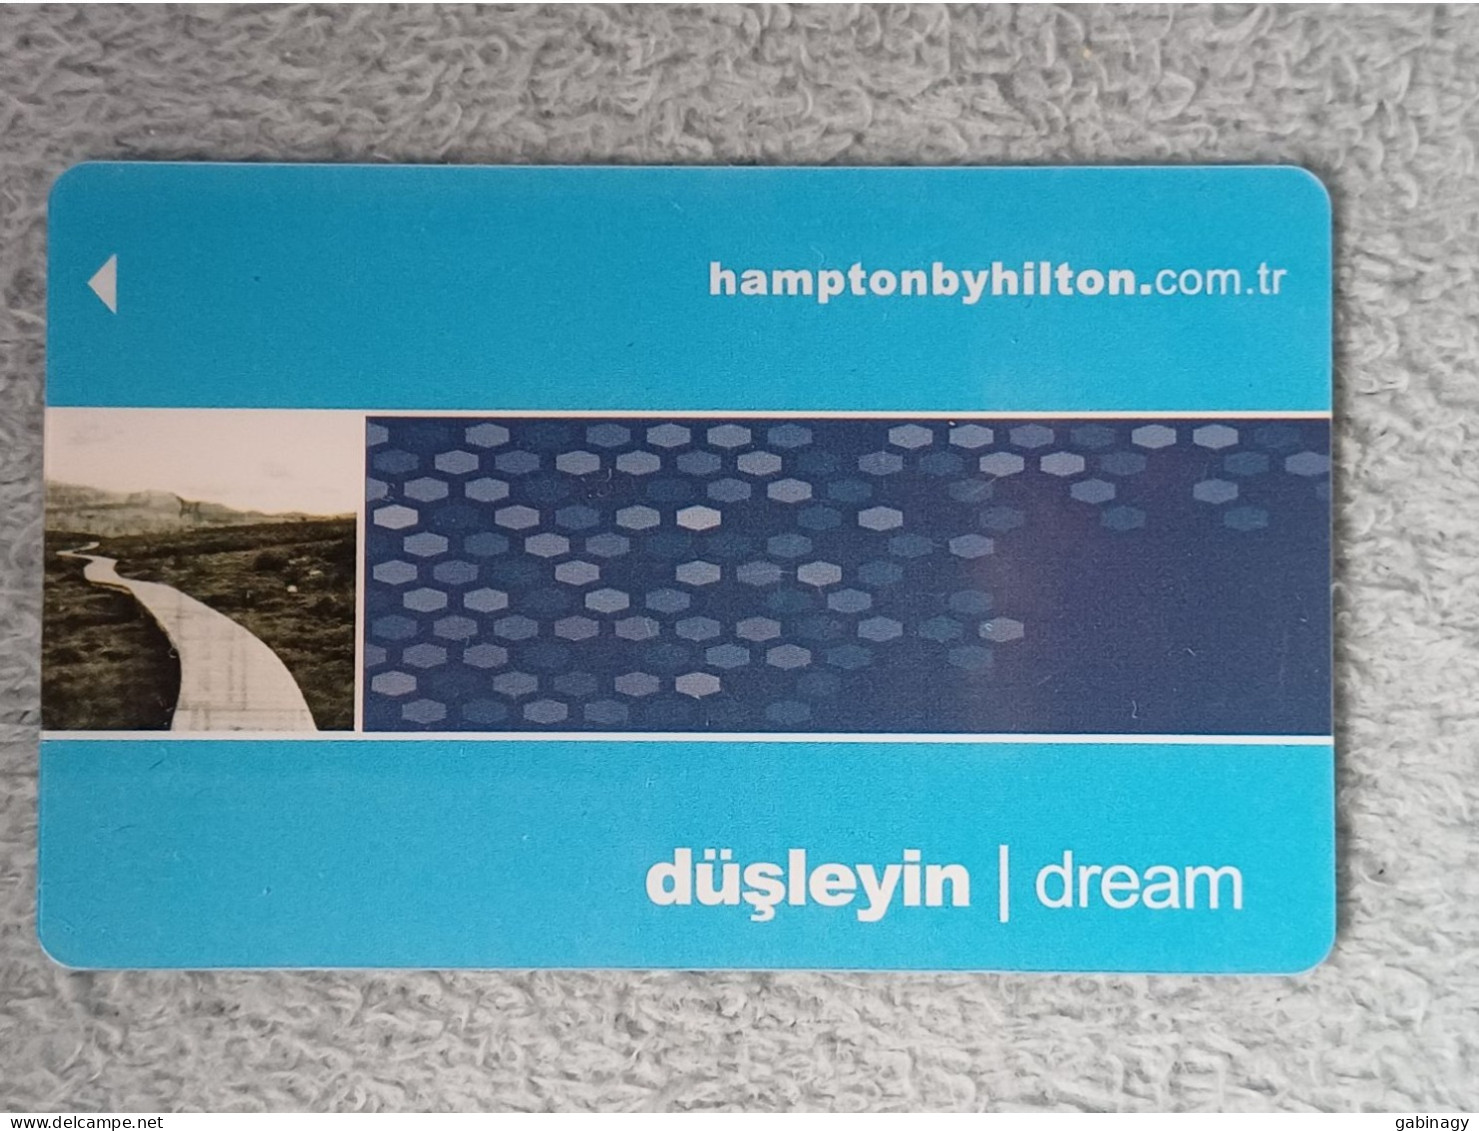 HOTEL KEYS - 2526 - TURKEY - HAMPTON BY HILTON DREAM - Hotelsleutels (kaarten)